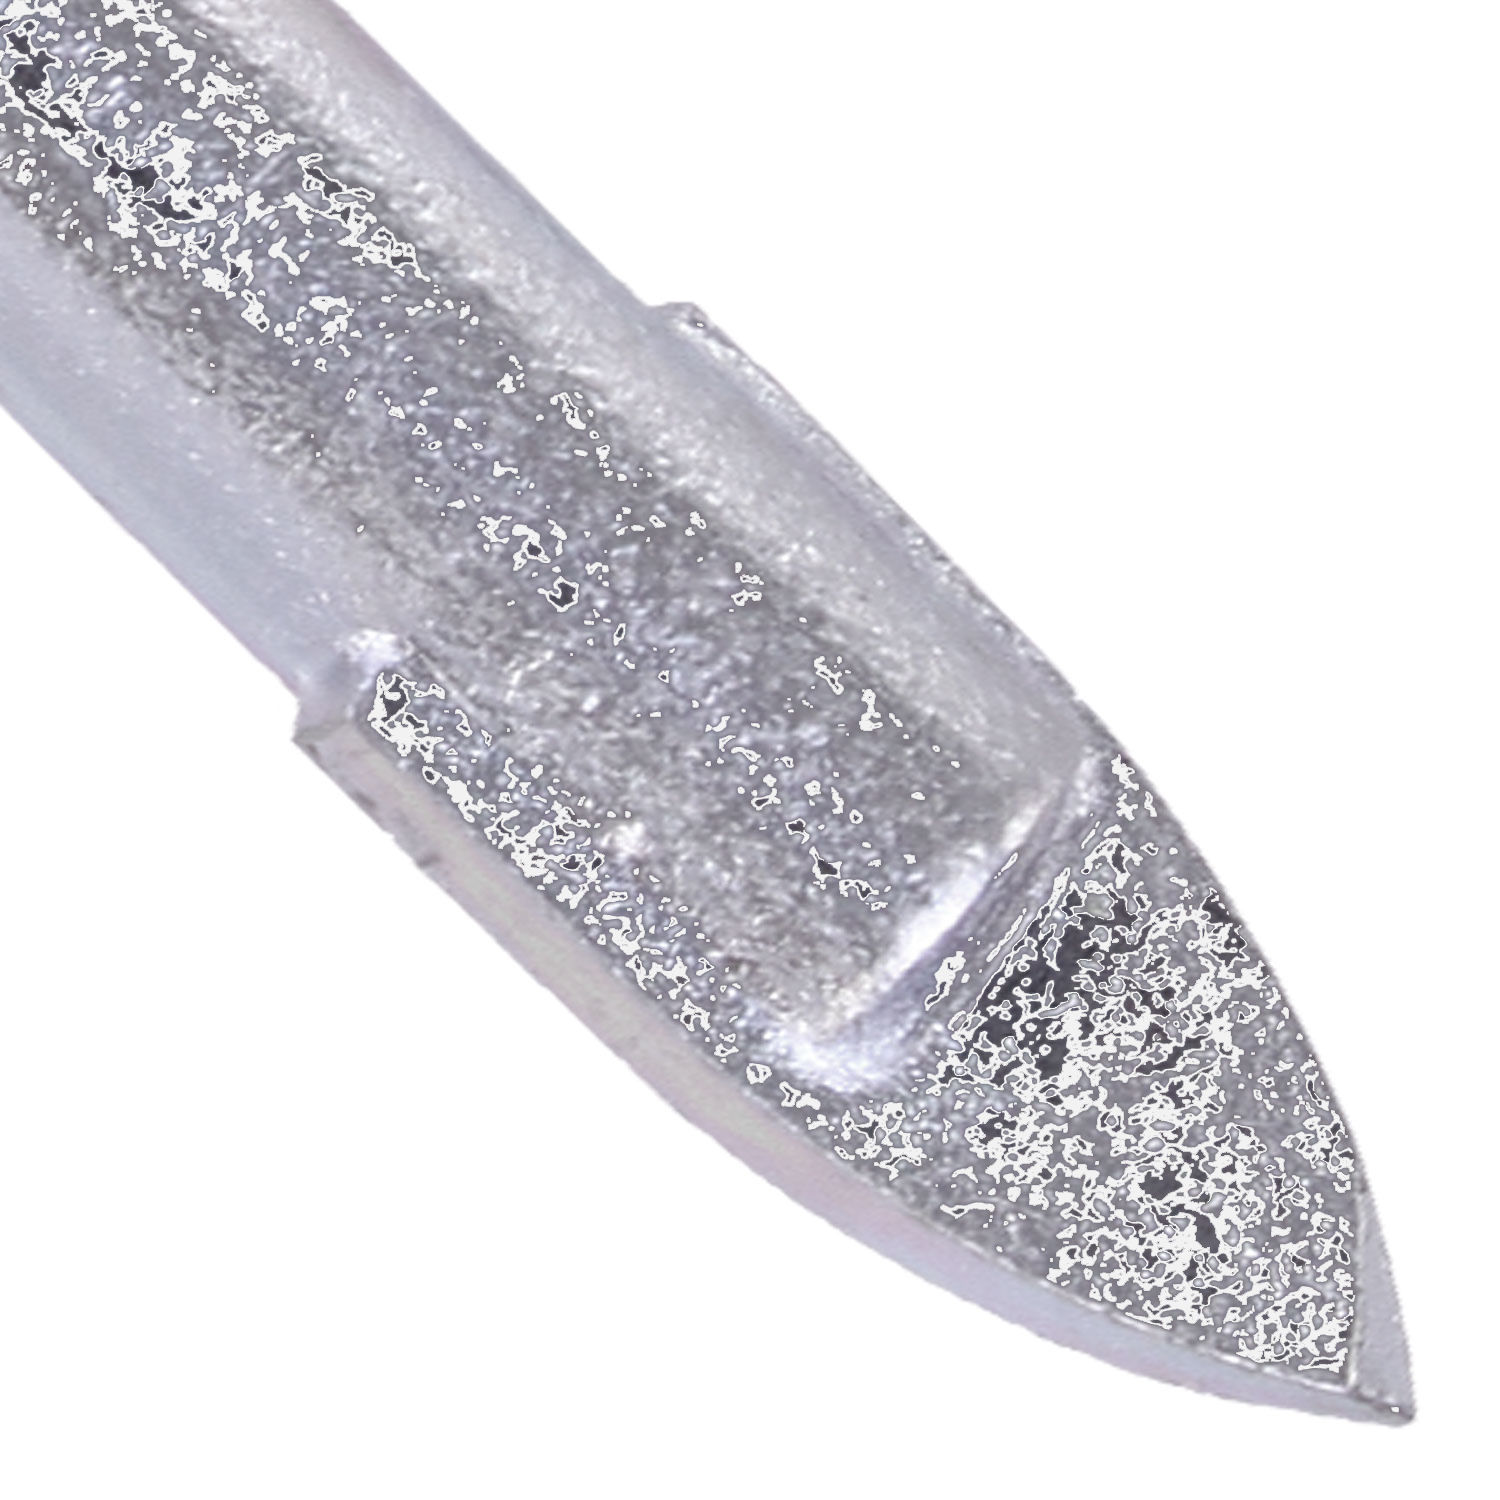 1 KEIL Glasbohrer Ø = 5mm, Länge = 58mm - diamantgeschliffene Hartmetallplatte